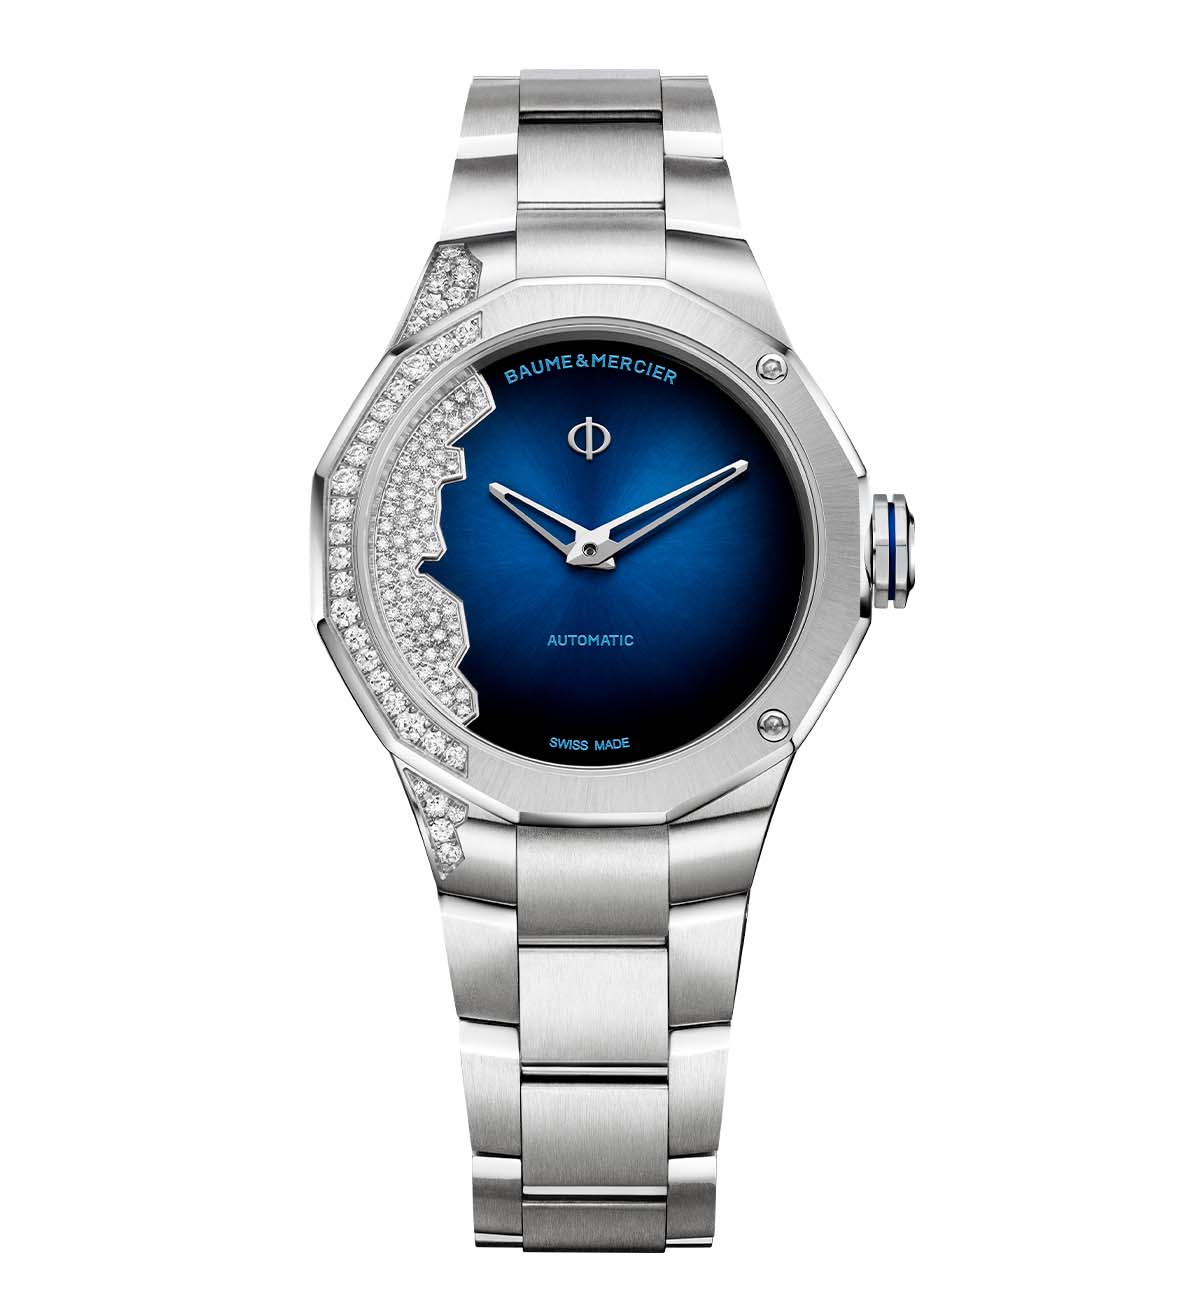 ボーム&メルシエの腕時計の画像